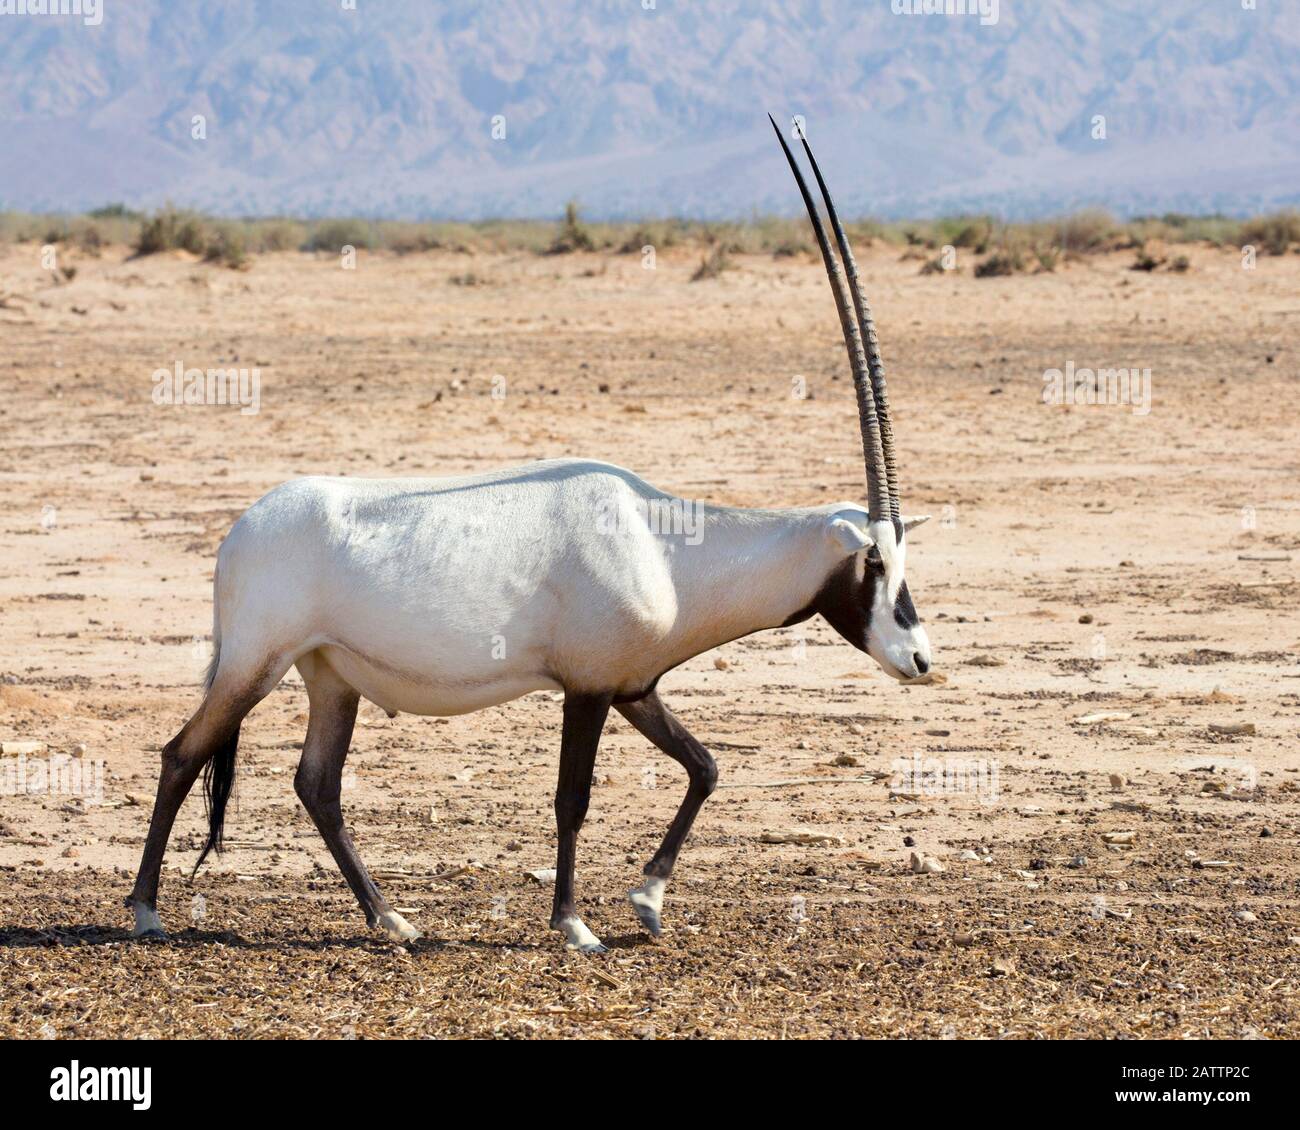 Oryx arabe marchant dans le désert du Negev au centre de reproduction de la réserve naturelle de Yotvata Hai-Bar pour la restauration de la faune qui a disparu en Israël Banque D'Images